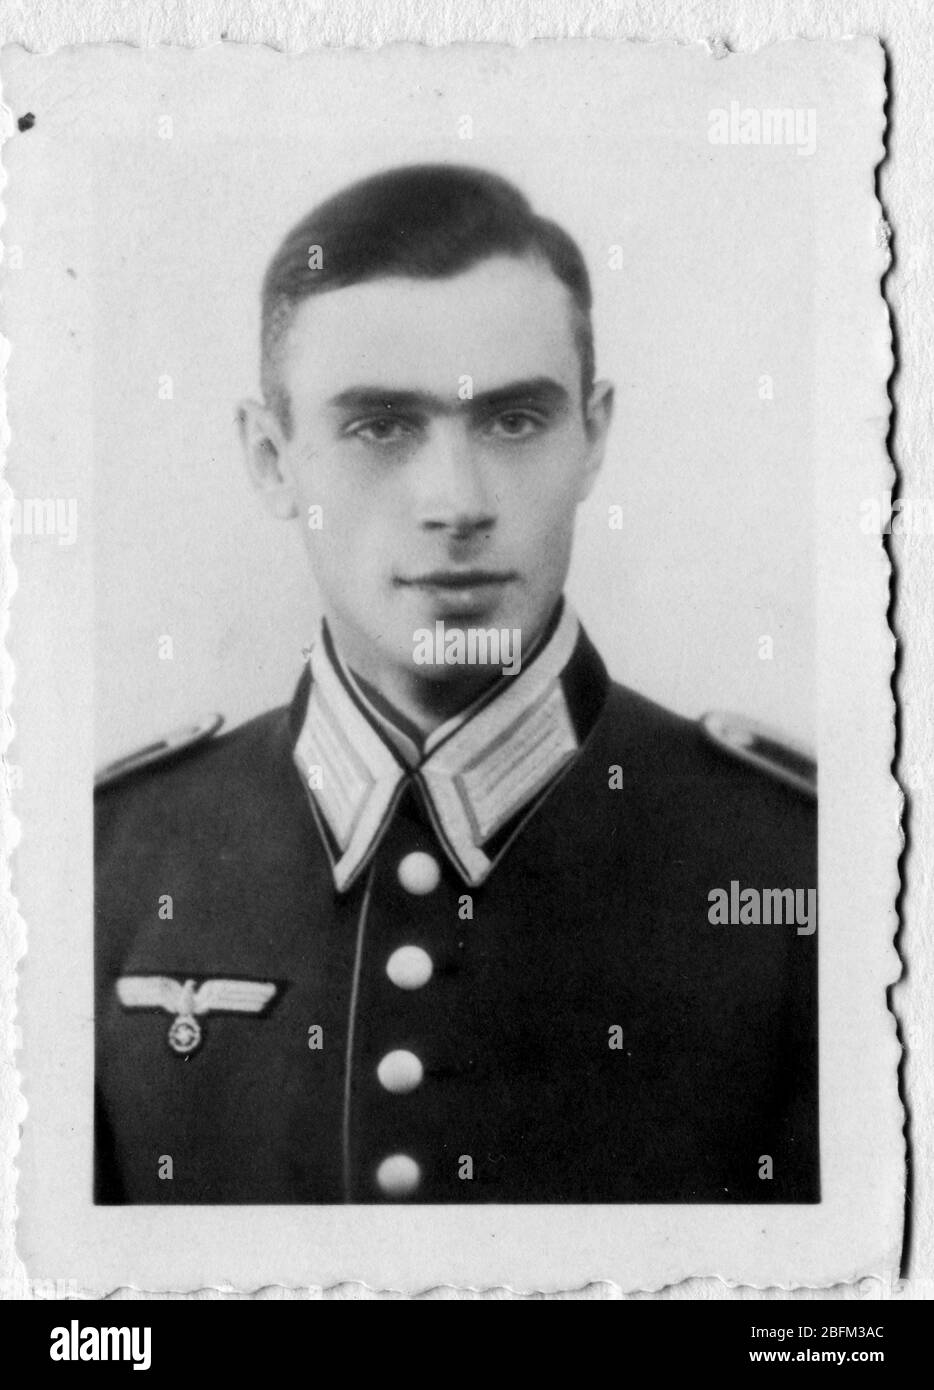 Période de la seconde Guerre mondiale, portrait du soldat, Allemagne Banque D'Images